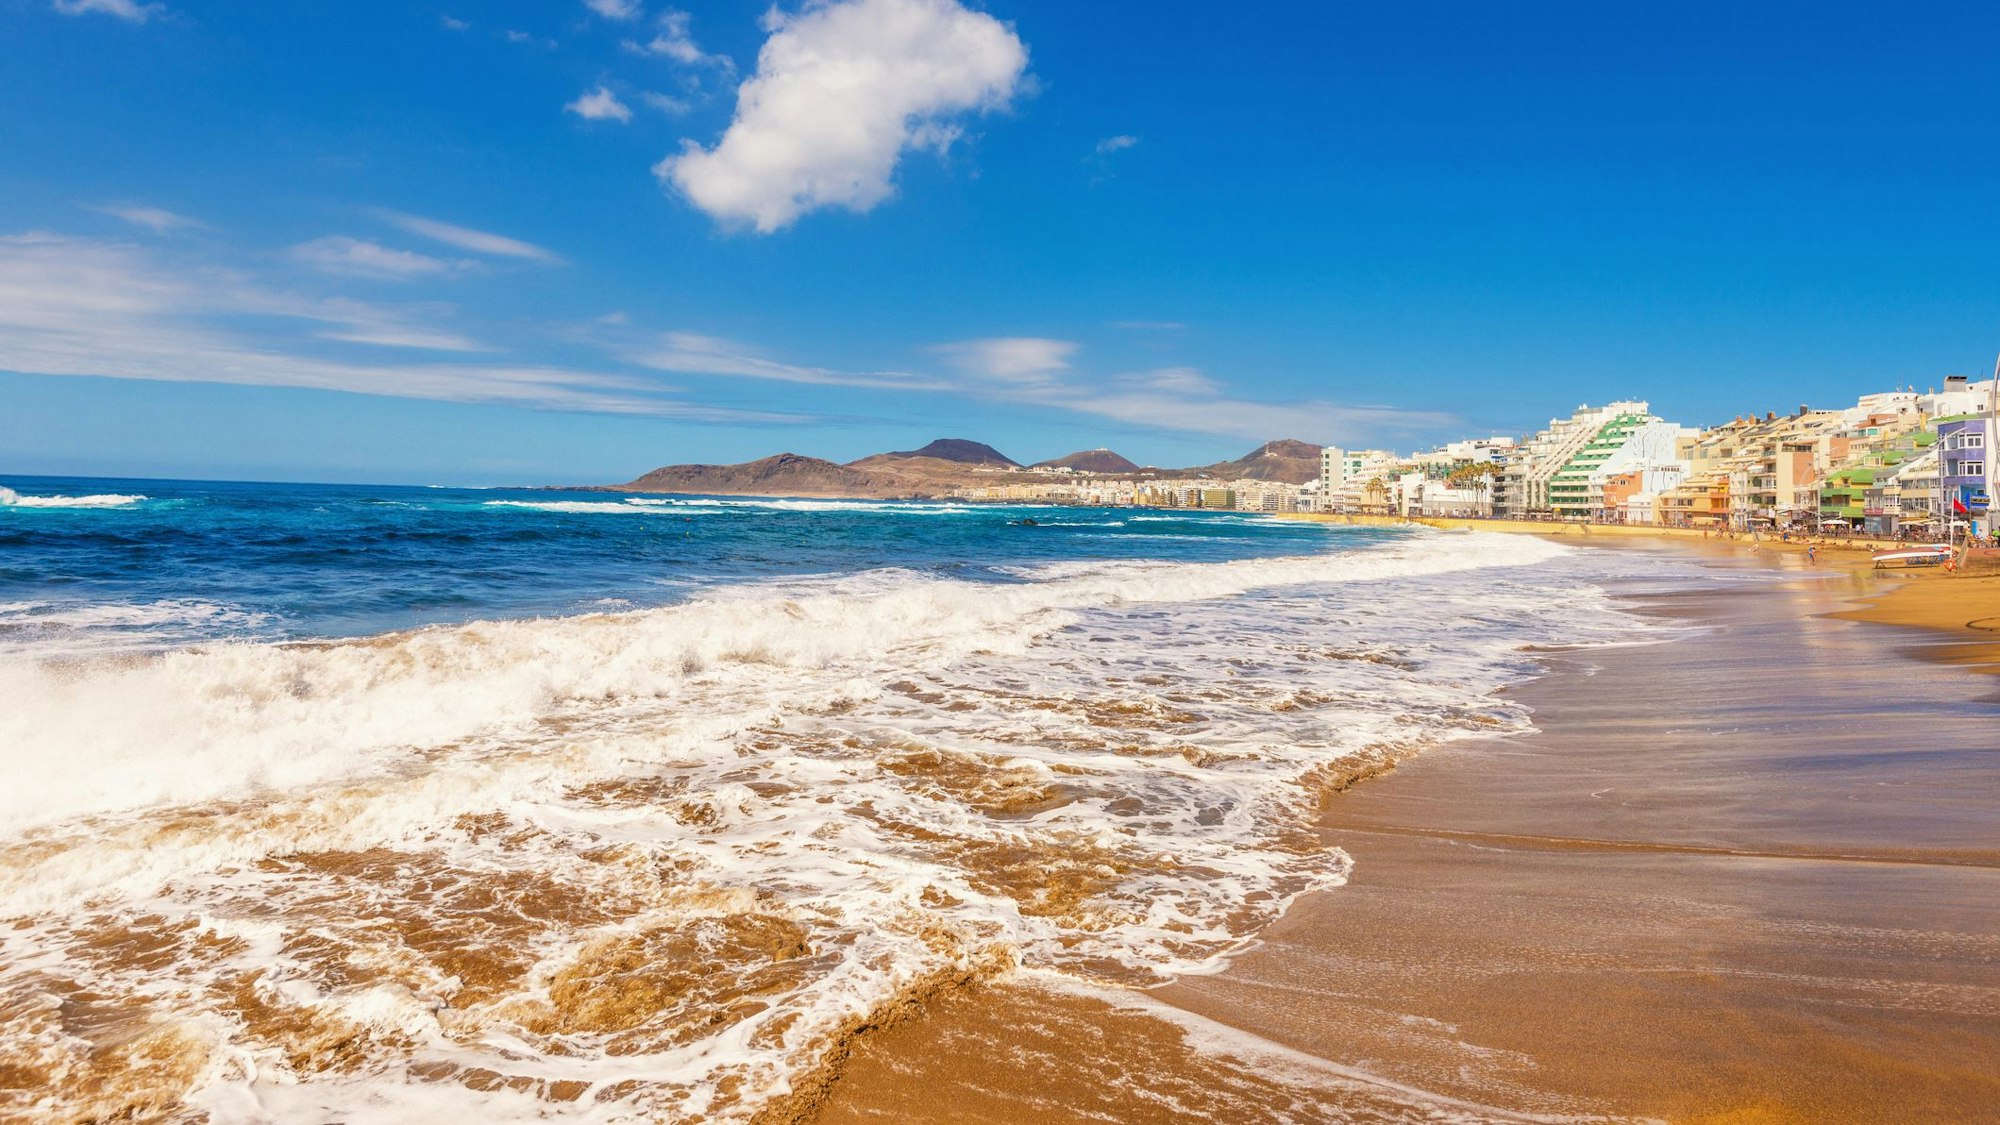 Auf dem Foto sieht man den Strand Playa de las Canteras auf Gran Canaria.